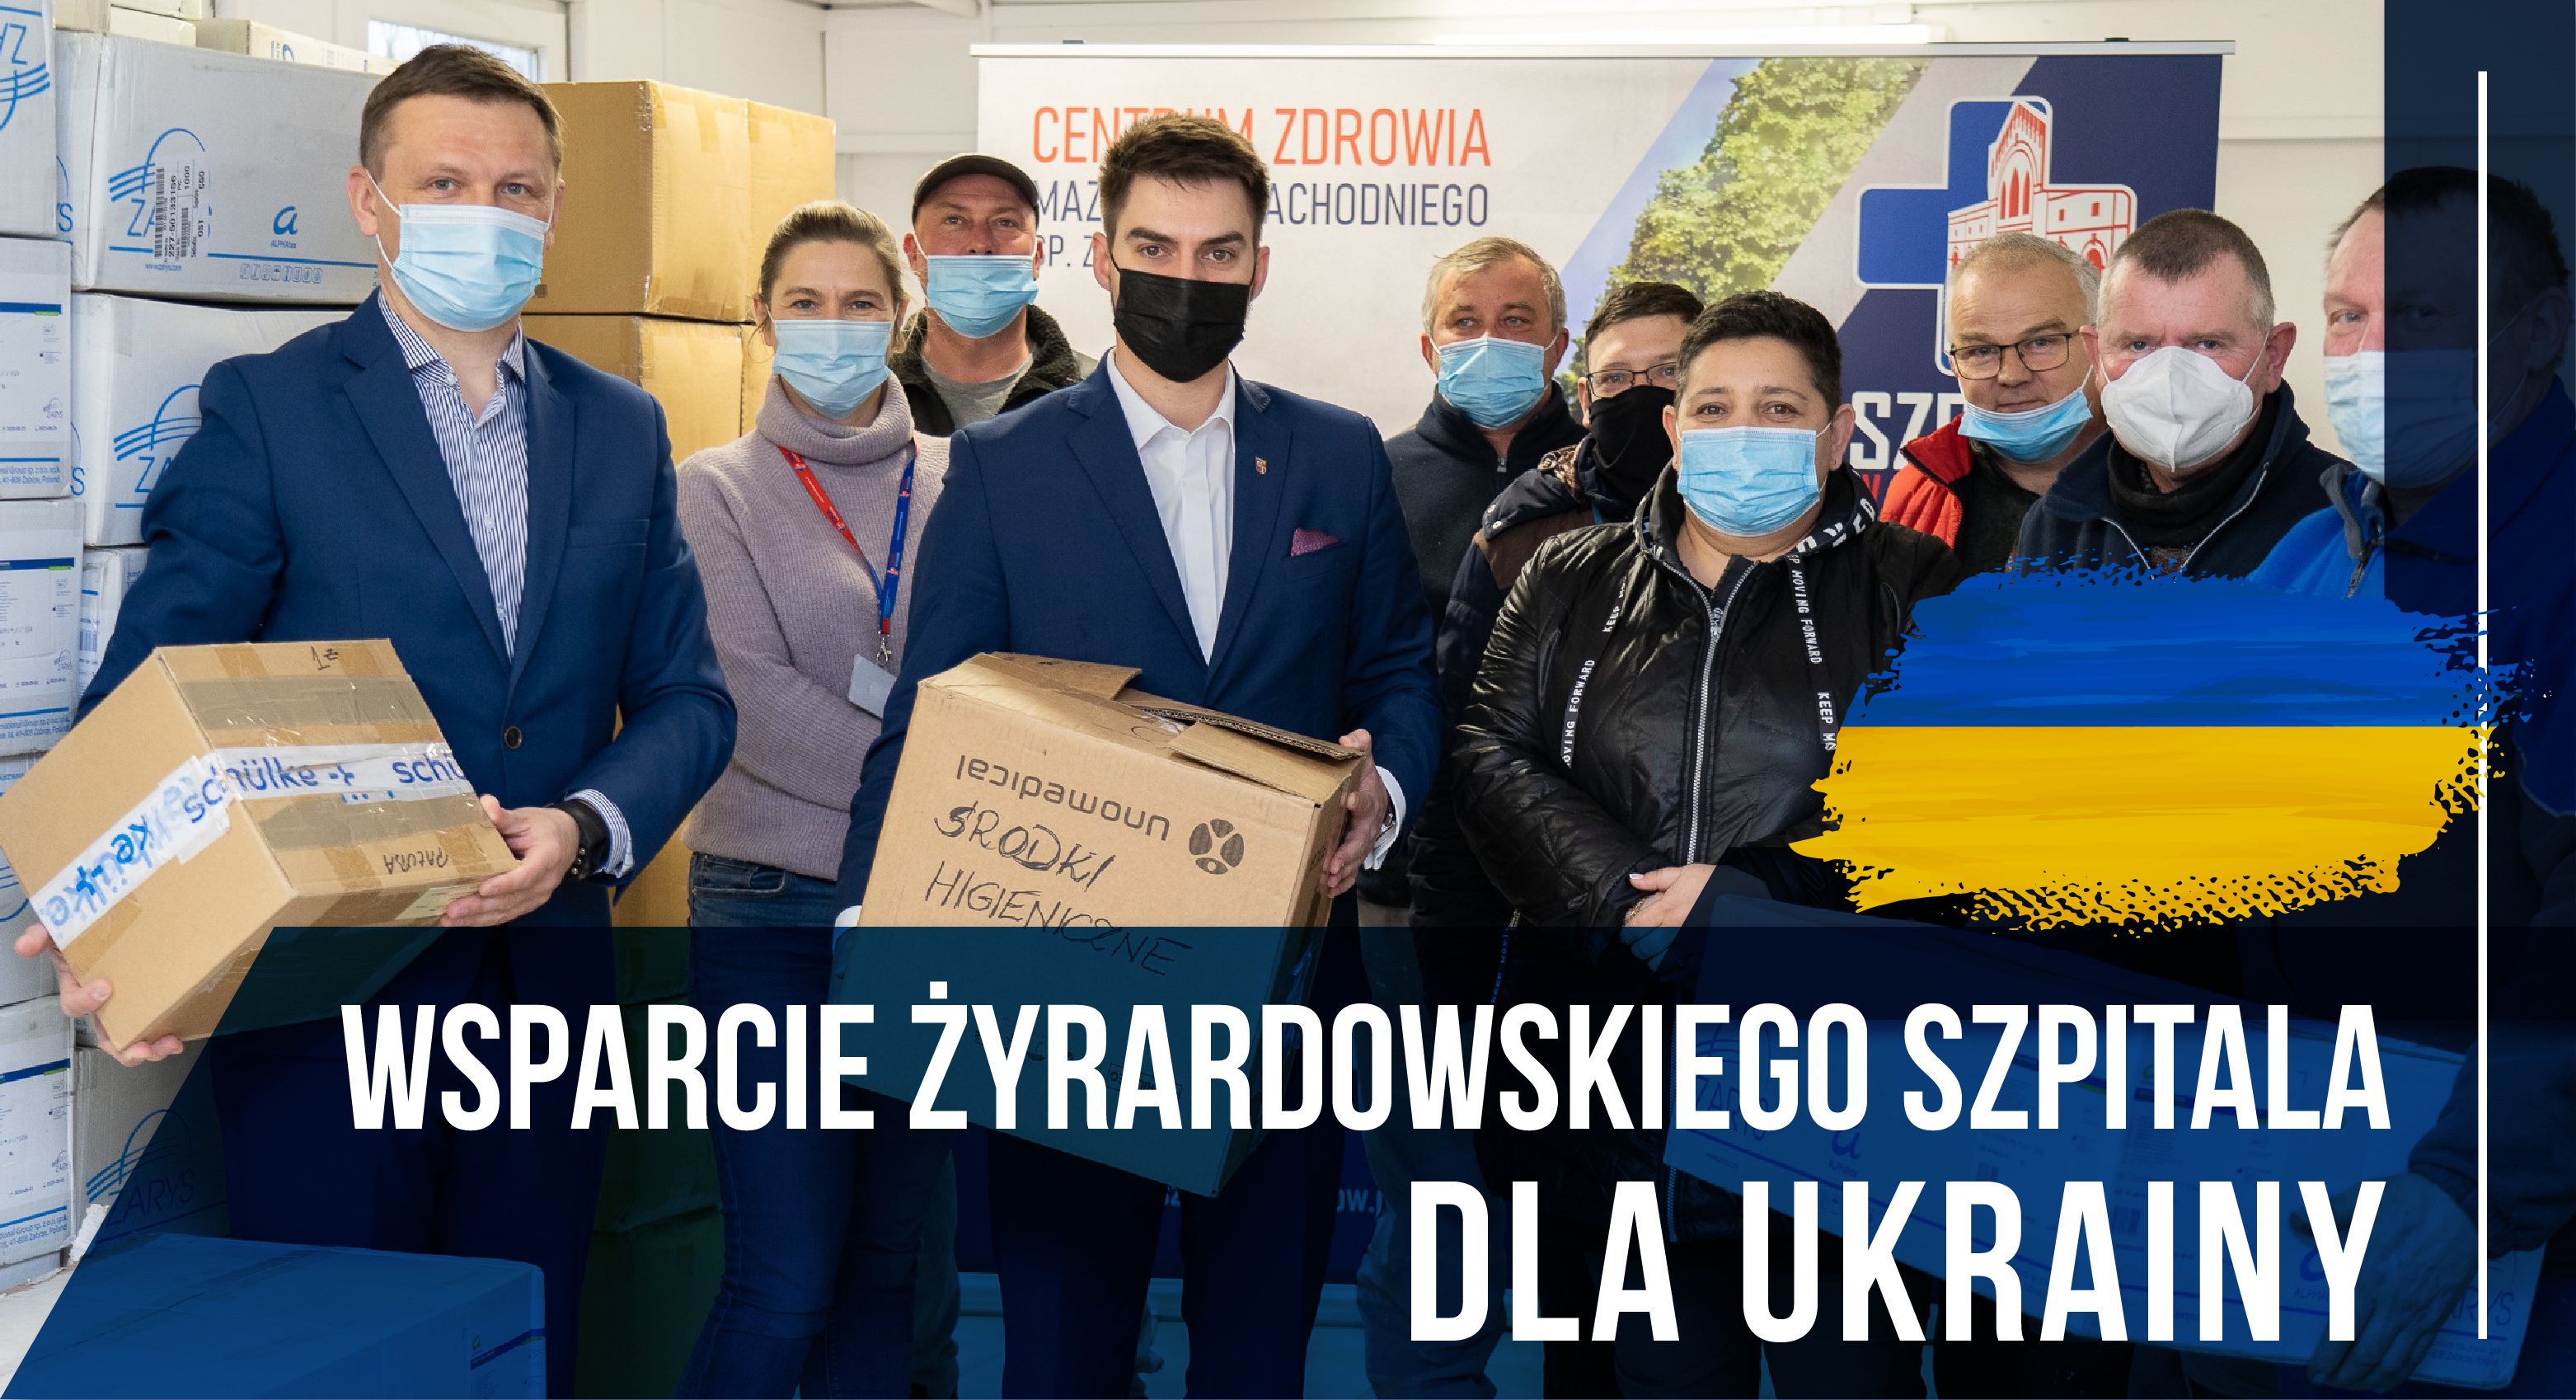 Wsparcie Żyrardowskiego Szpitala dla Ukrainy! Dobro zawsze wraca.